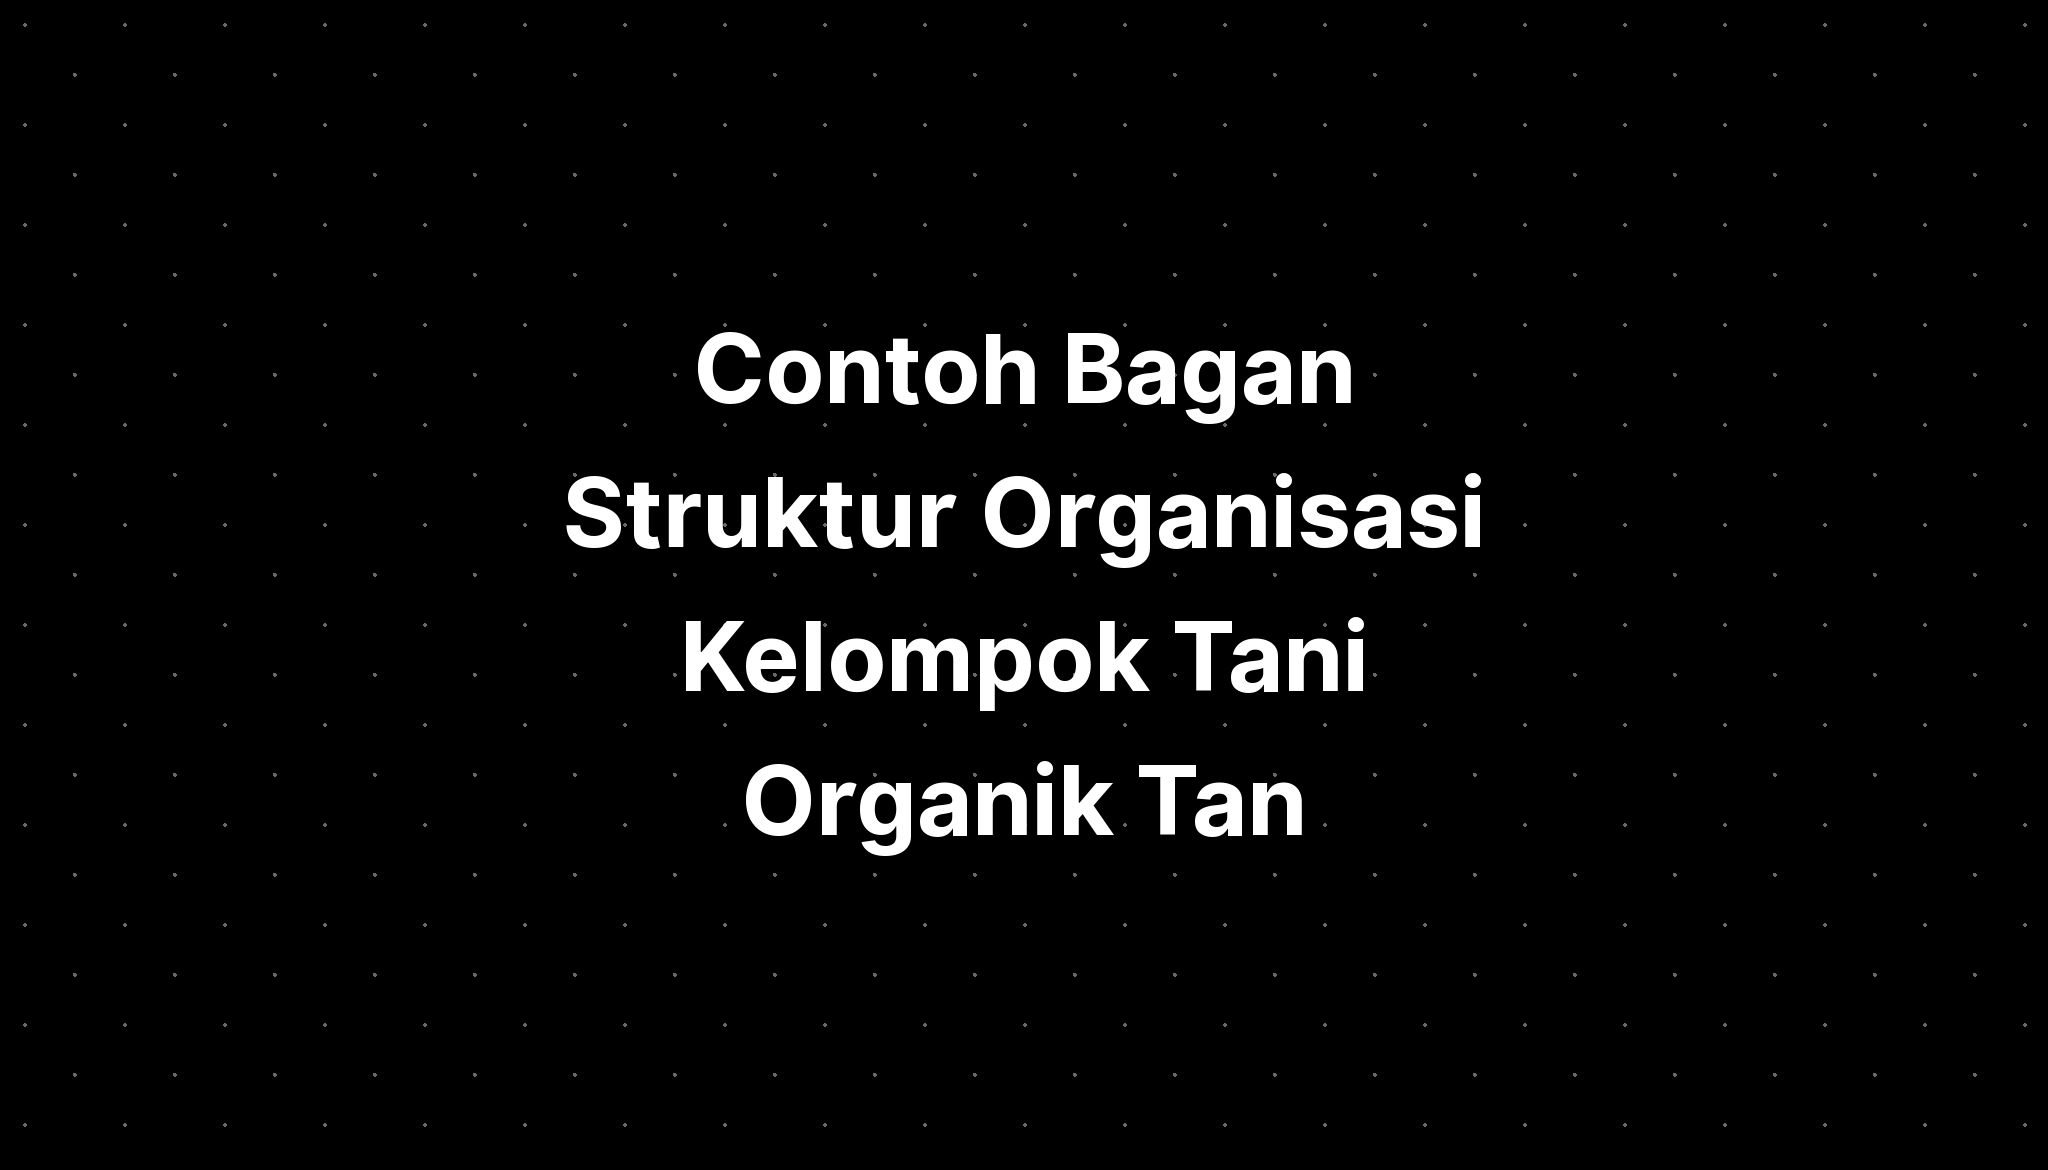 Contoh Bagan Struktur Organisasi Kelompok Tani Organik Tan Imagesee